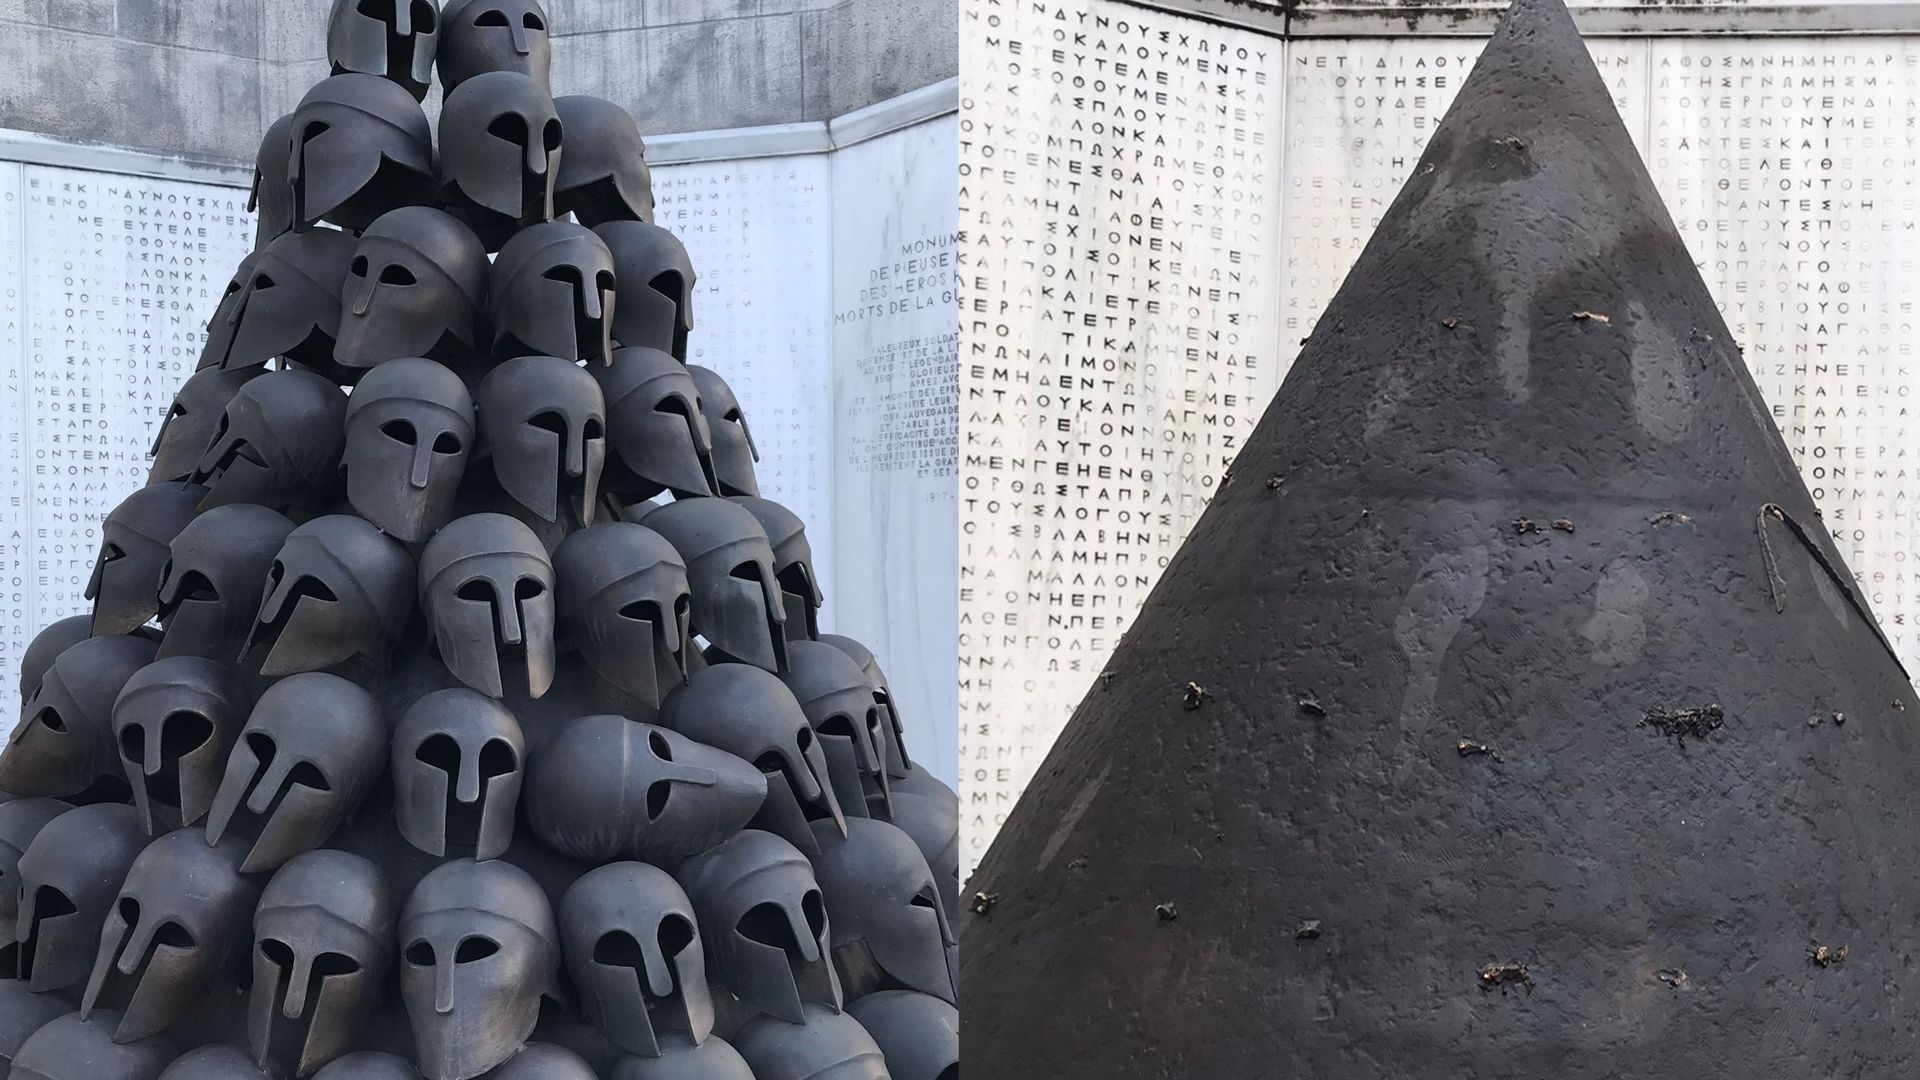 Le monument tel qu'il était et tel qu'il apparaît désormais: tous les casques ont été volés